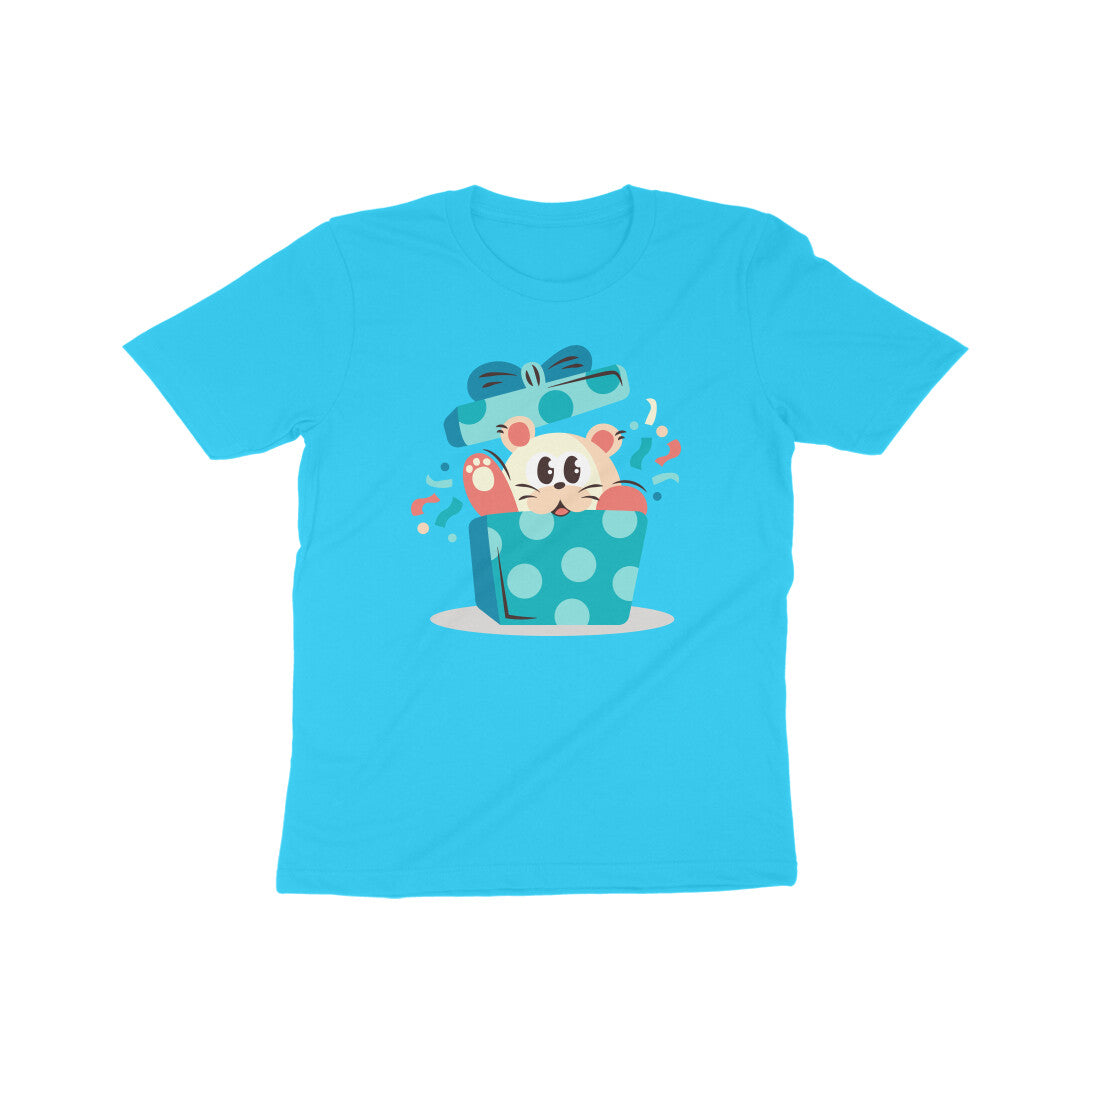 Bear Gift Kids T-Shirt